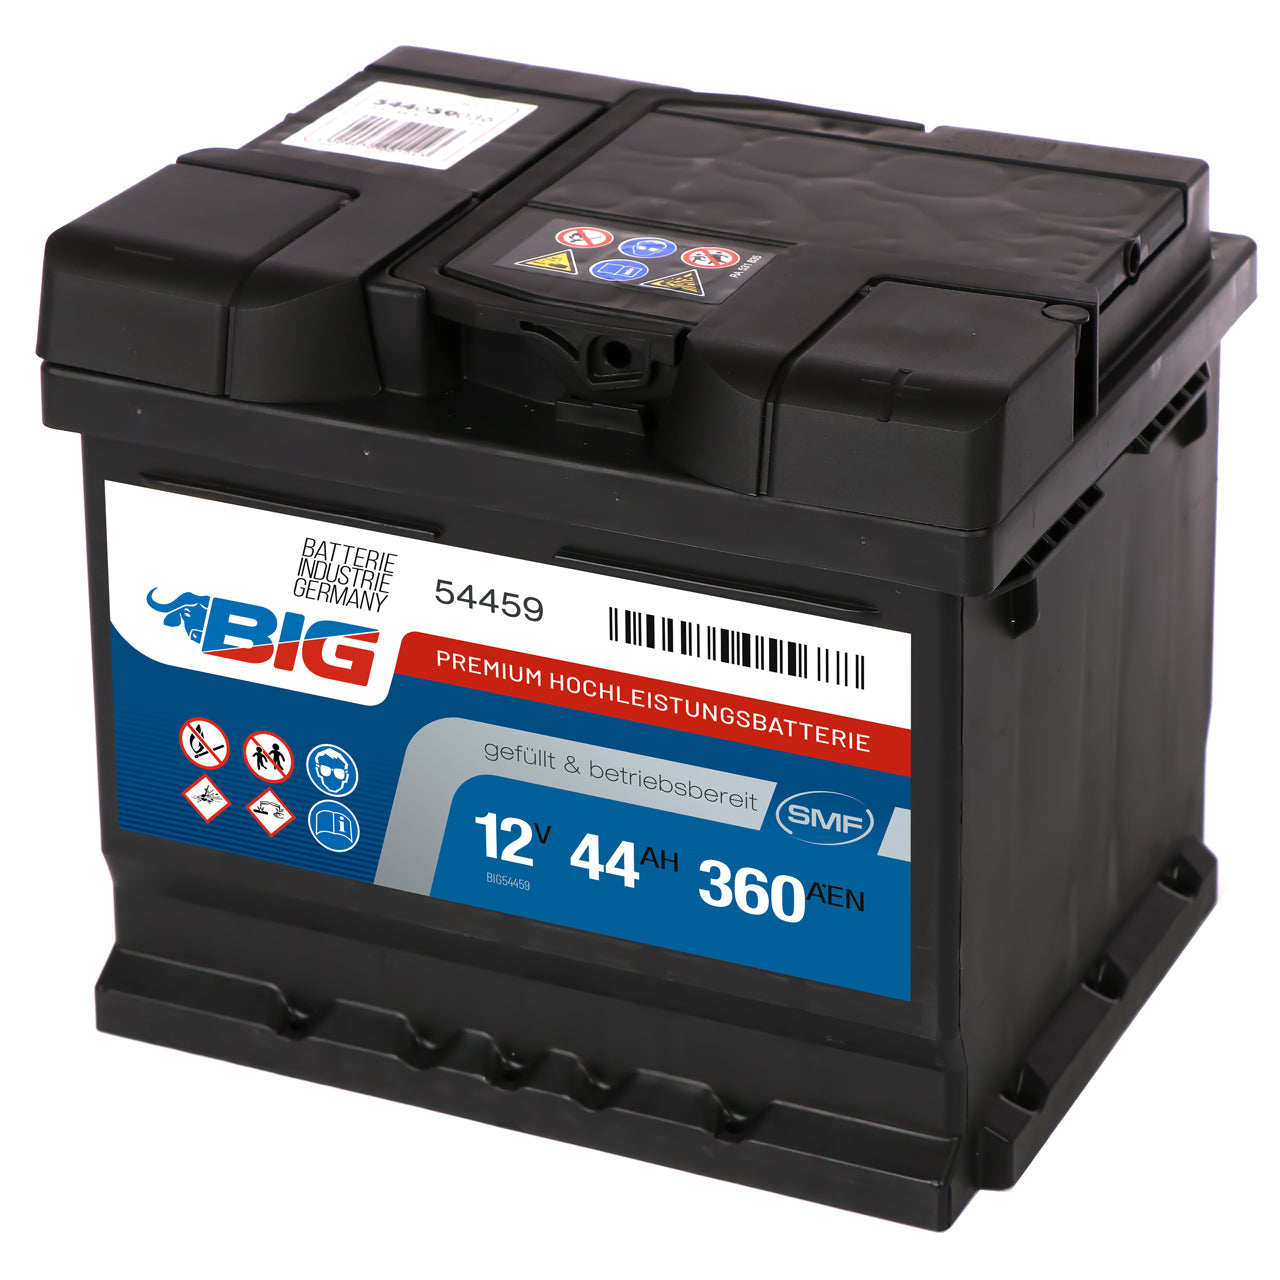 BIG Autobatterie 12V 44Ah DIN 54459